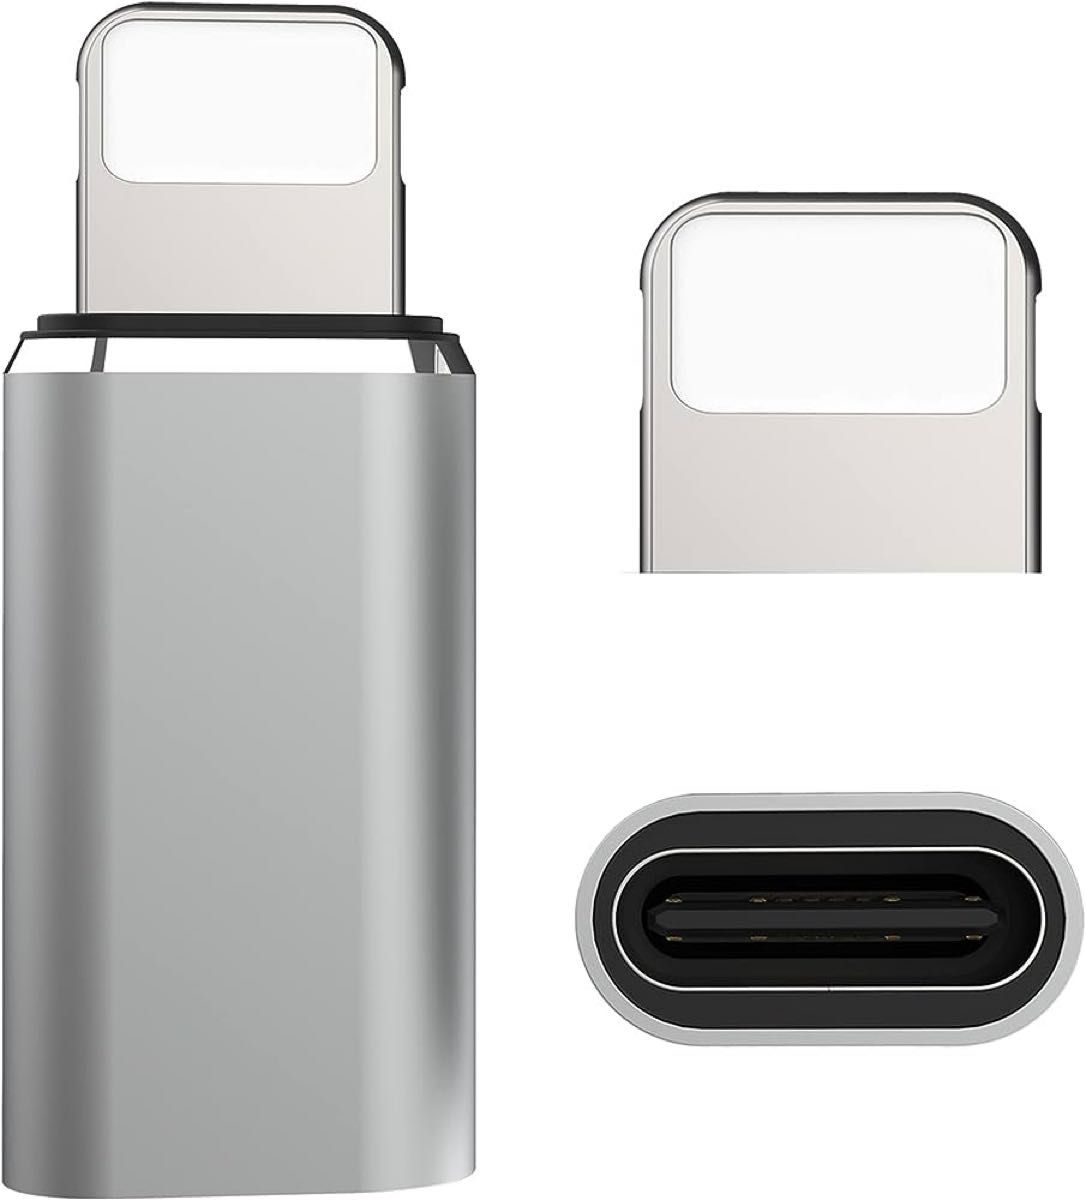 タイプC(USB C)からIOS変換コネクタ充電 変換アダプタ